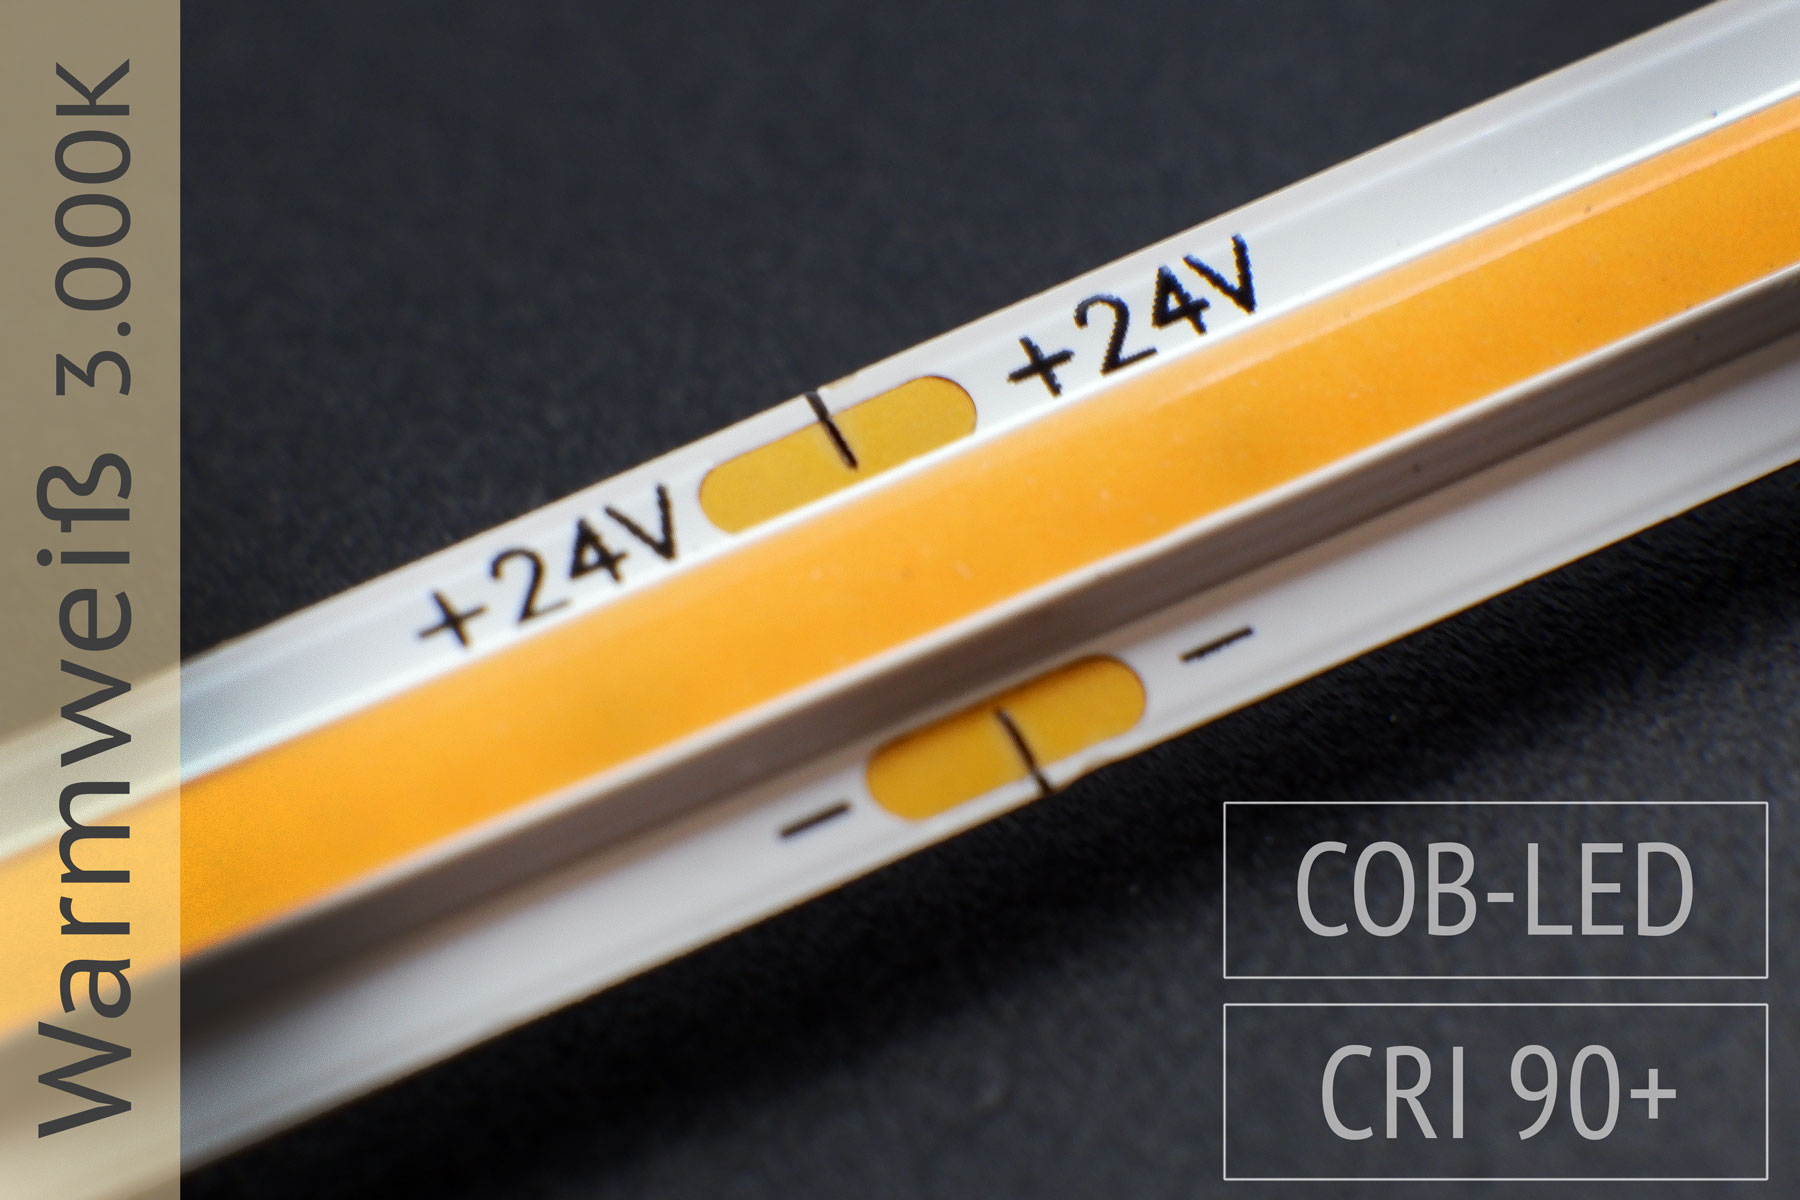 Neuheit: COB LED-Streifen - keine LEDs sichtbar - 1.300 lm/m - 3.000K warmweiß - IP20 5m-Rolle